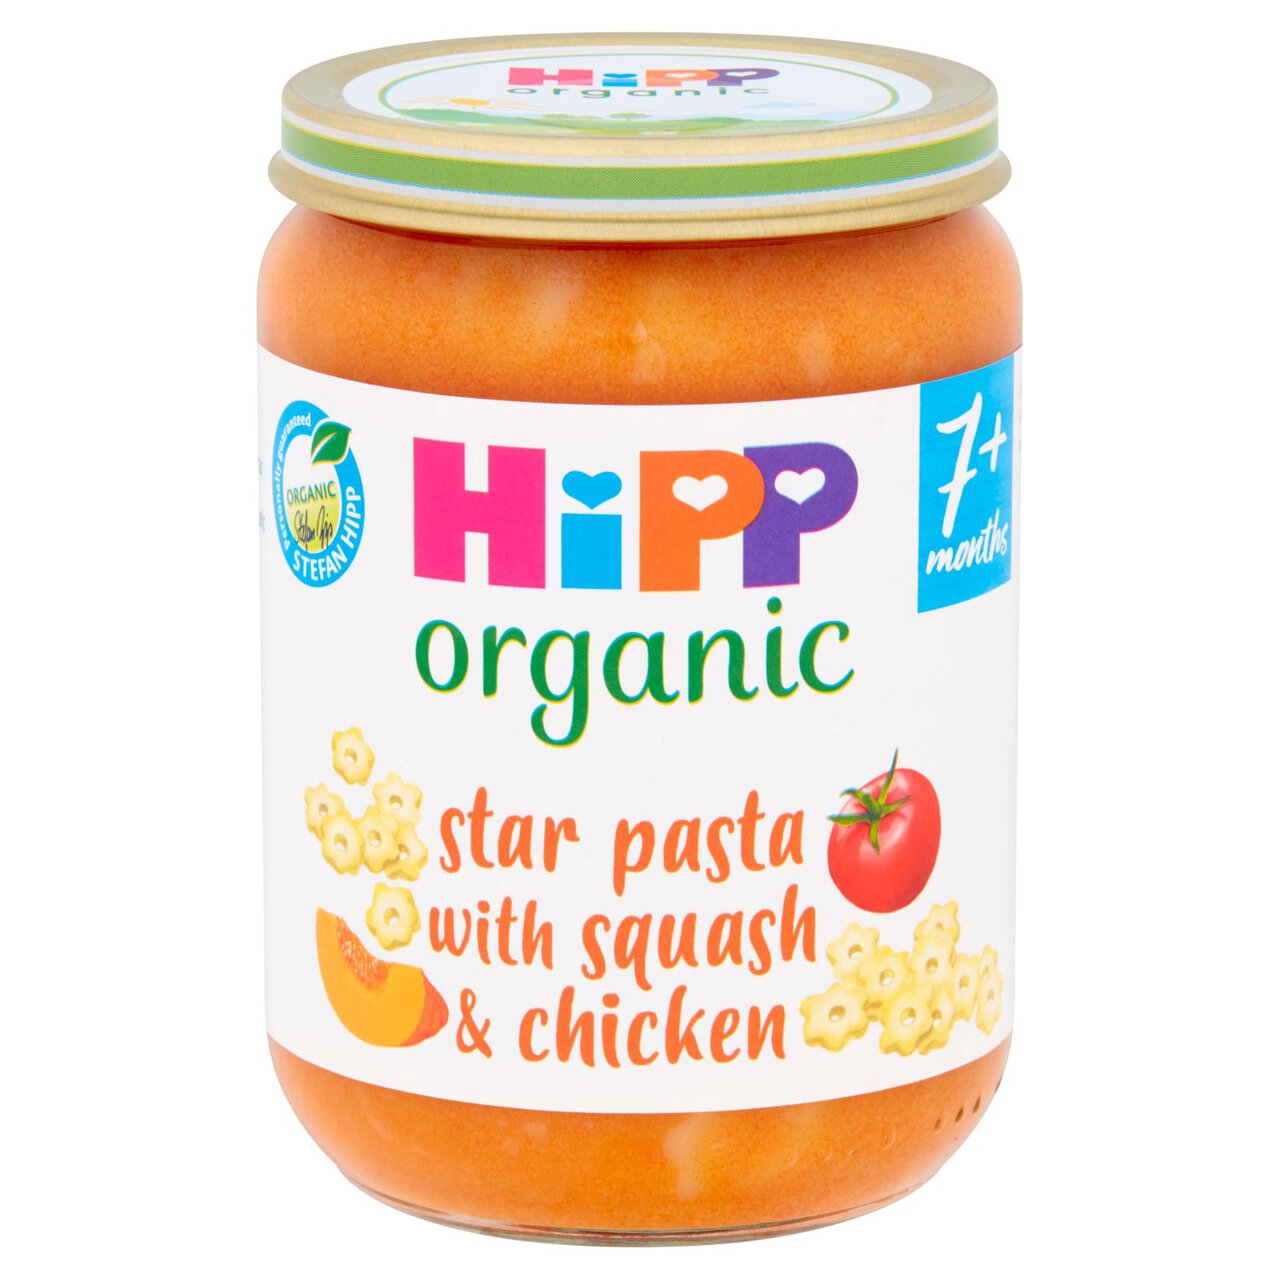 HiPP Organic Star pasta with Squash & Chicken Baby Food Jar 7+ Months 190g